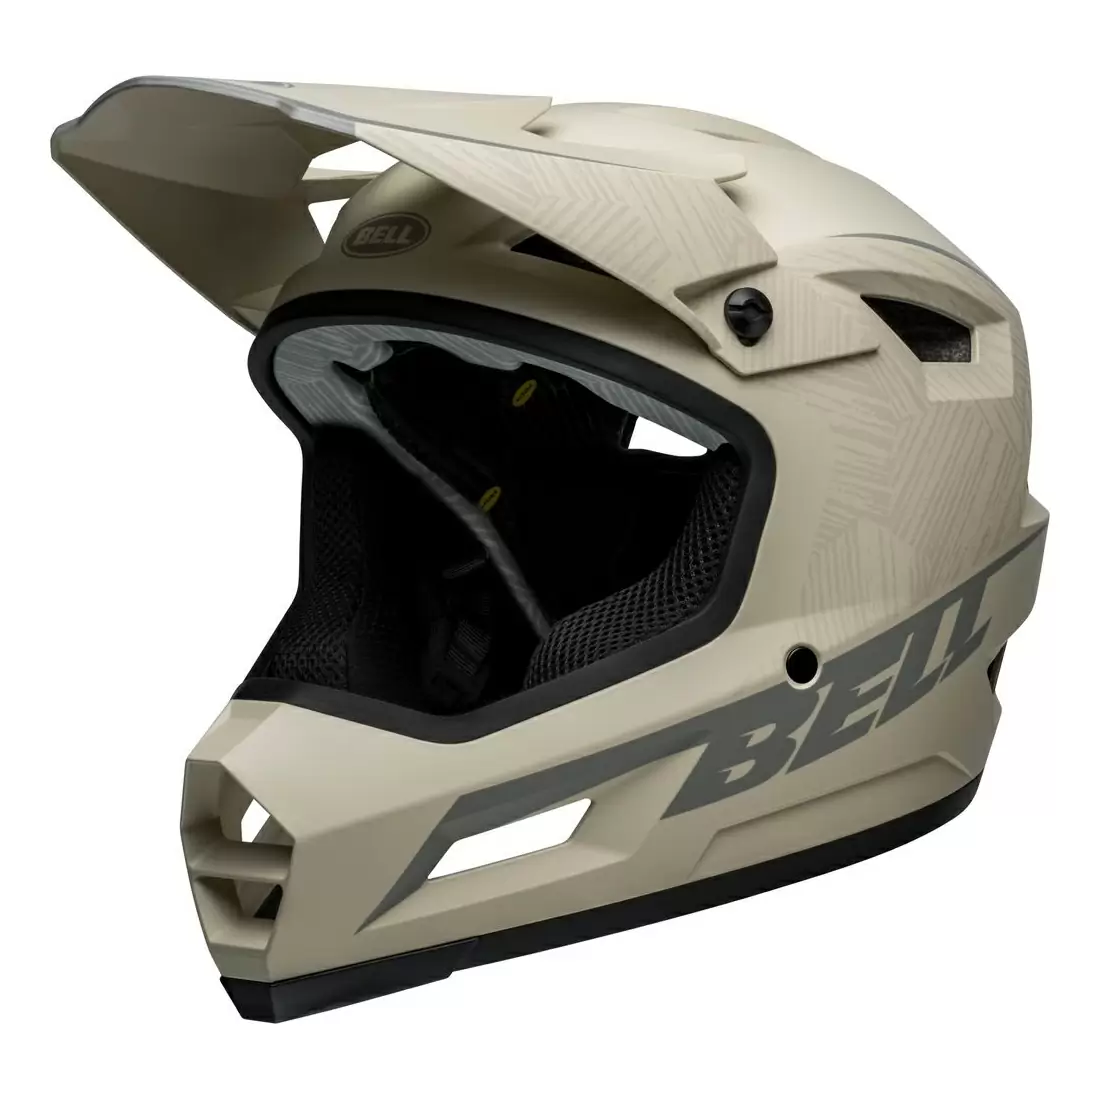 Sanction 2 DLX MIPS Full Face Helmet Gray Size L (57-59cm) - image